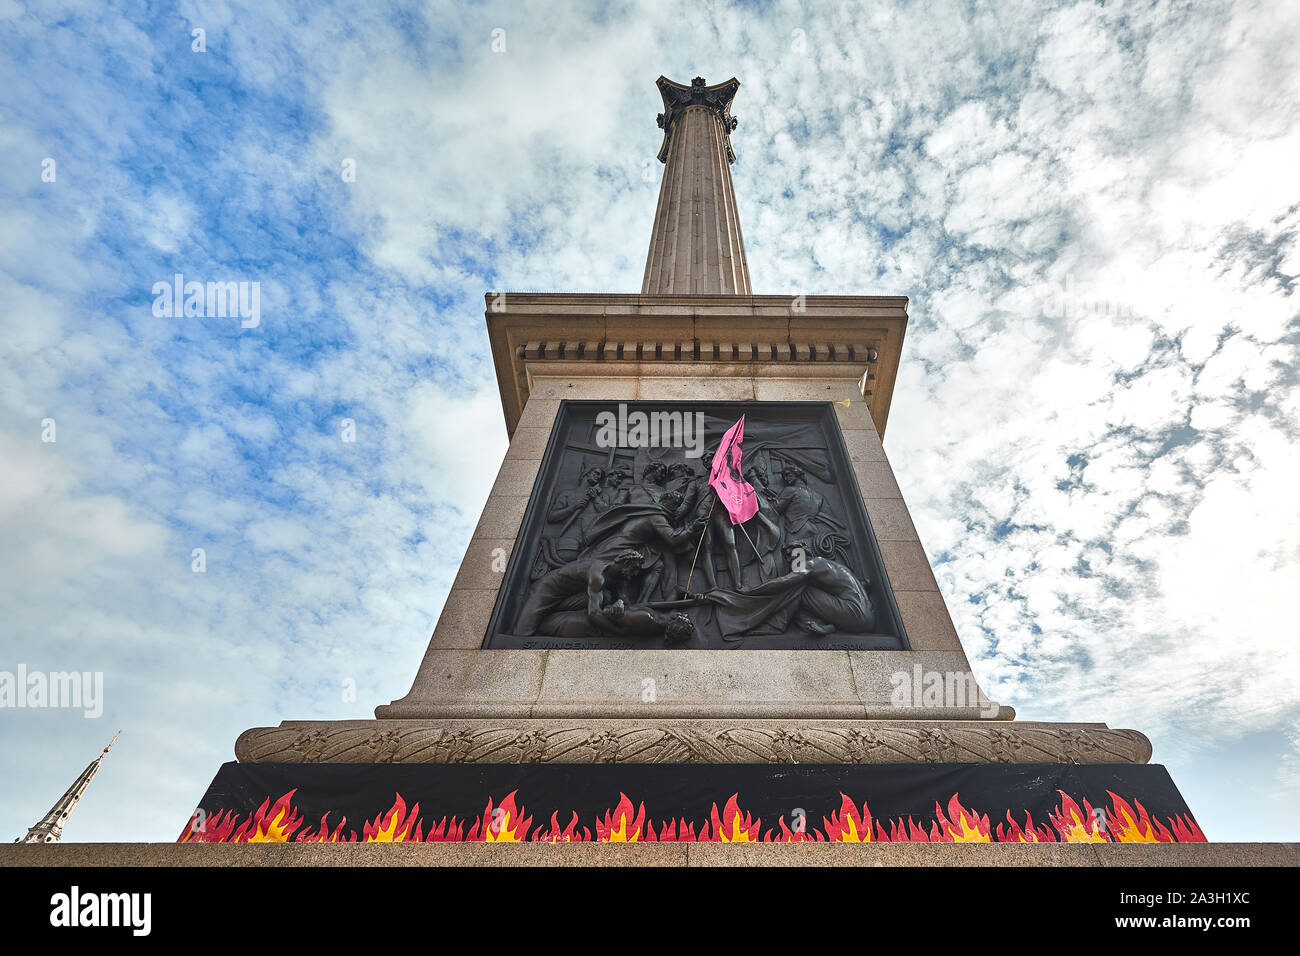 Londres, Reino Unido - Oct 8, 2019: Las llamas colocados alrededor de la base de la columna de Nelson por activistas de extinción Rebelión en el segundo día de una ocupación de Trafalgar Square. Foto de stock